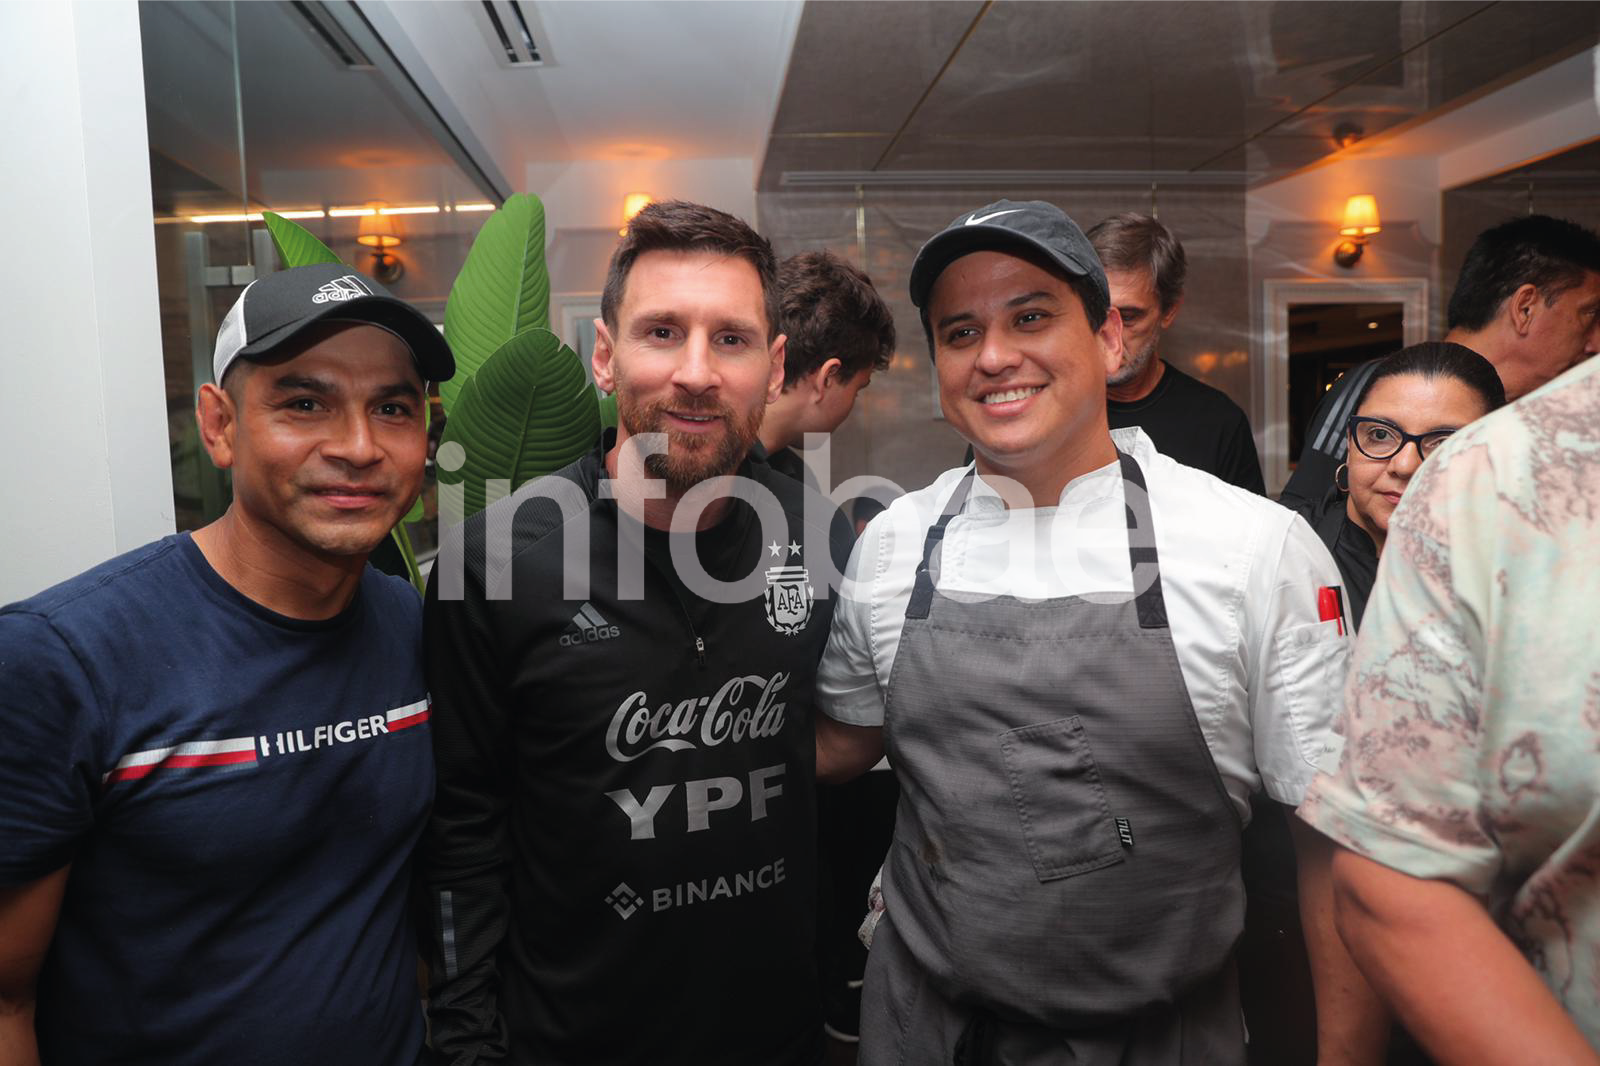 Todo el personal del restaurante aprovechó la oportunidad para fotografiarse con su ídolo, Lionel Messi. Una noche inolvidable para los que trabajaron atendiendo al seleccionado.